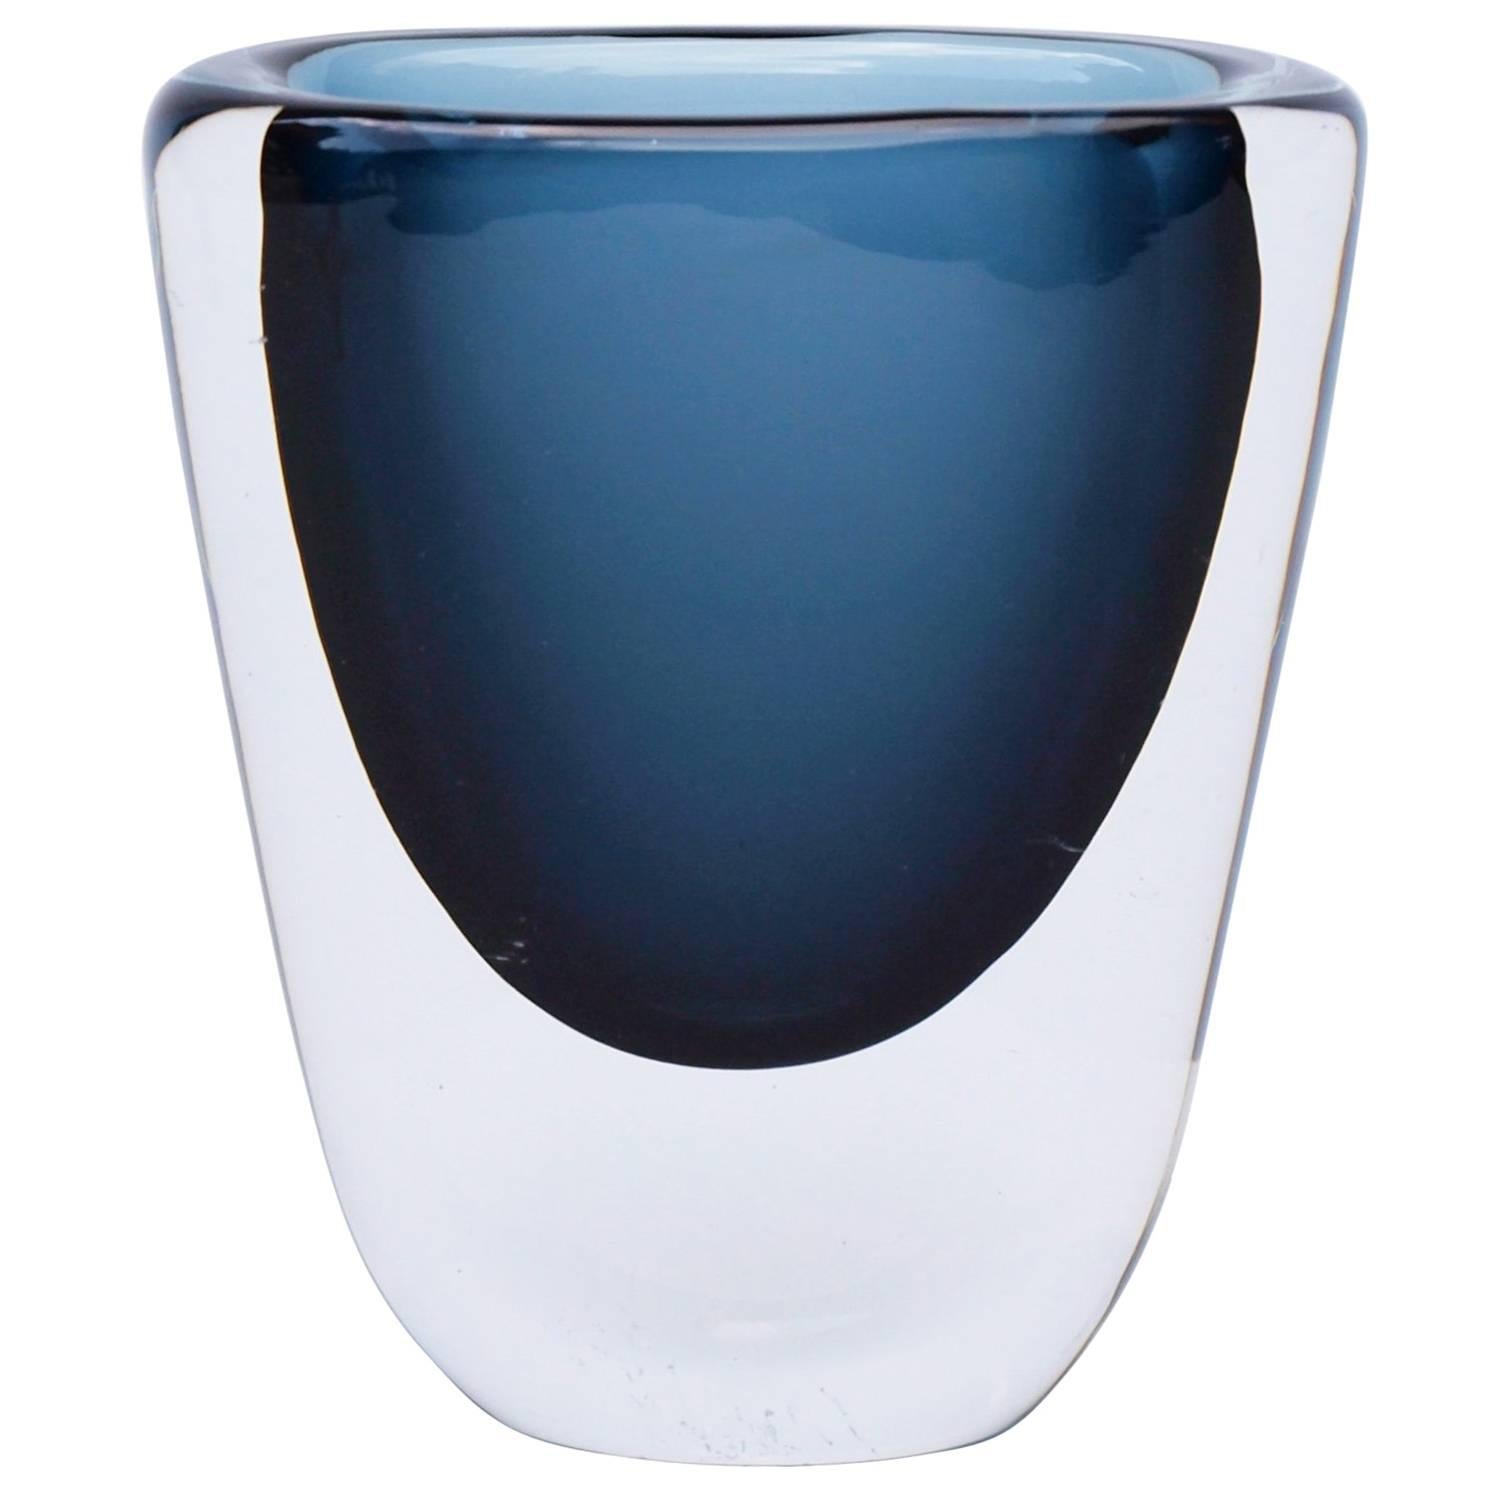 1950s Blue Glass Vase by Nils Landberg for Orrefors